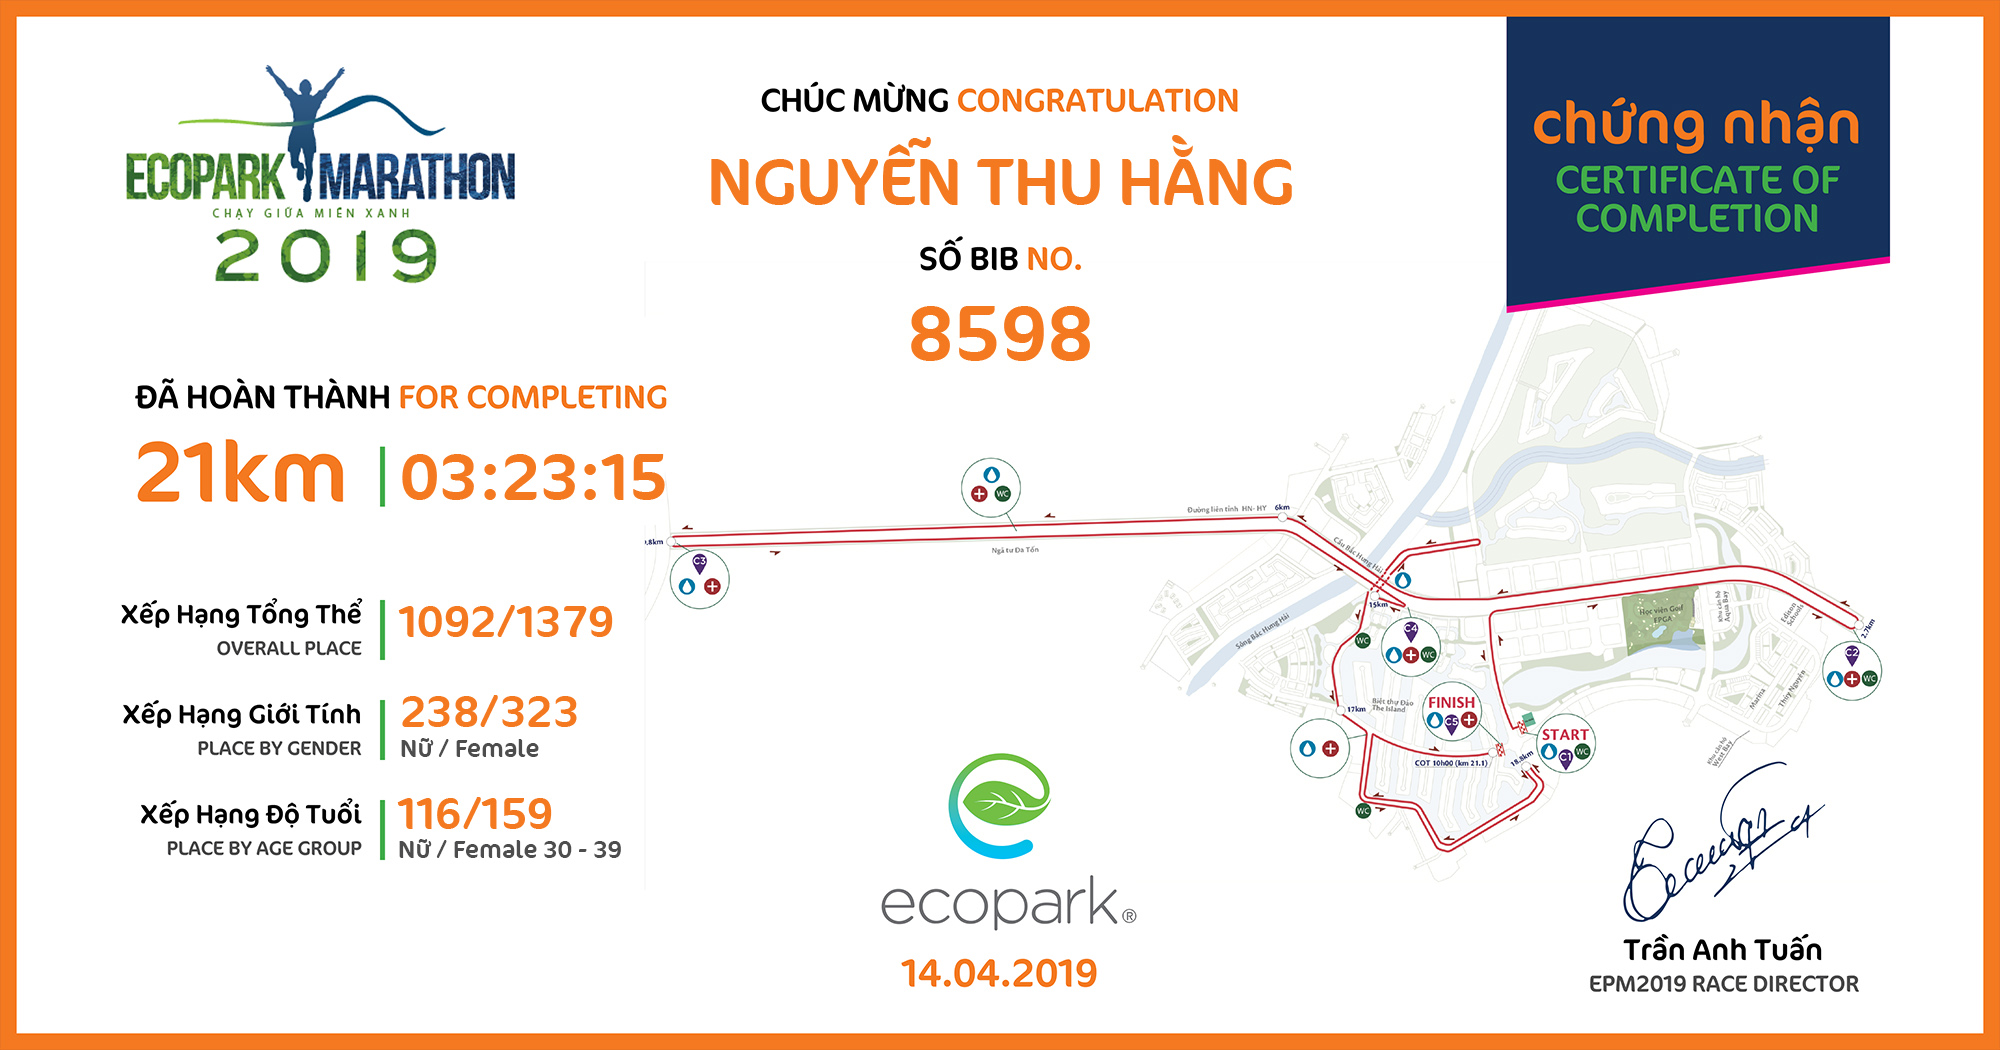 8598 - Nguyễn Thu Hằng